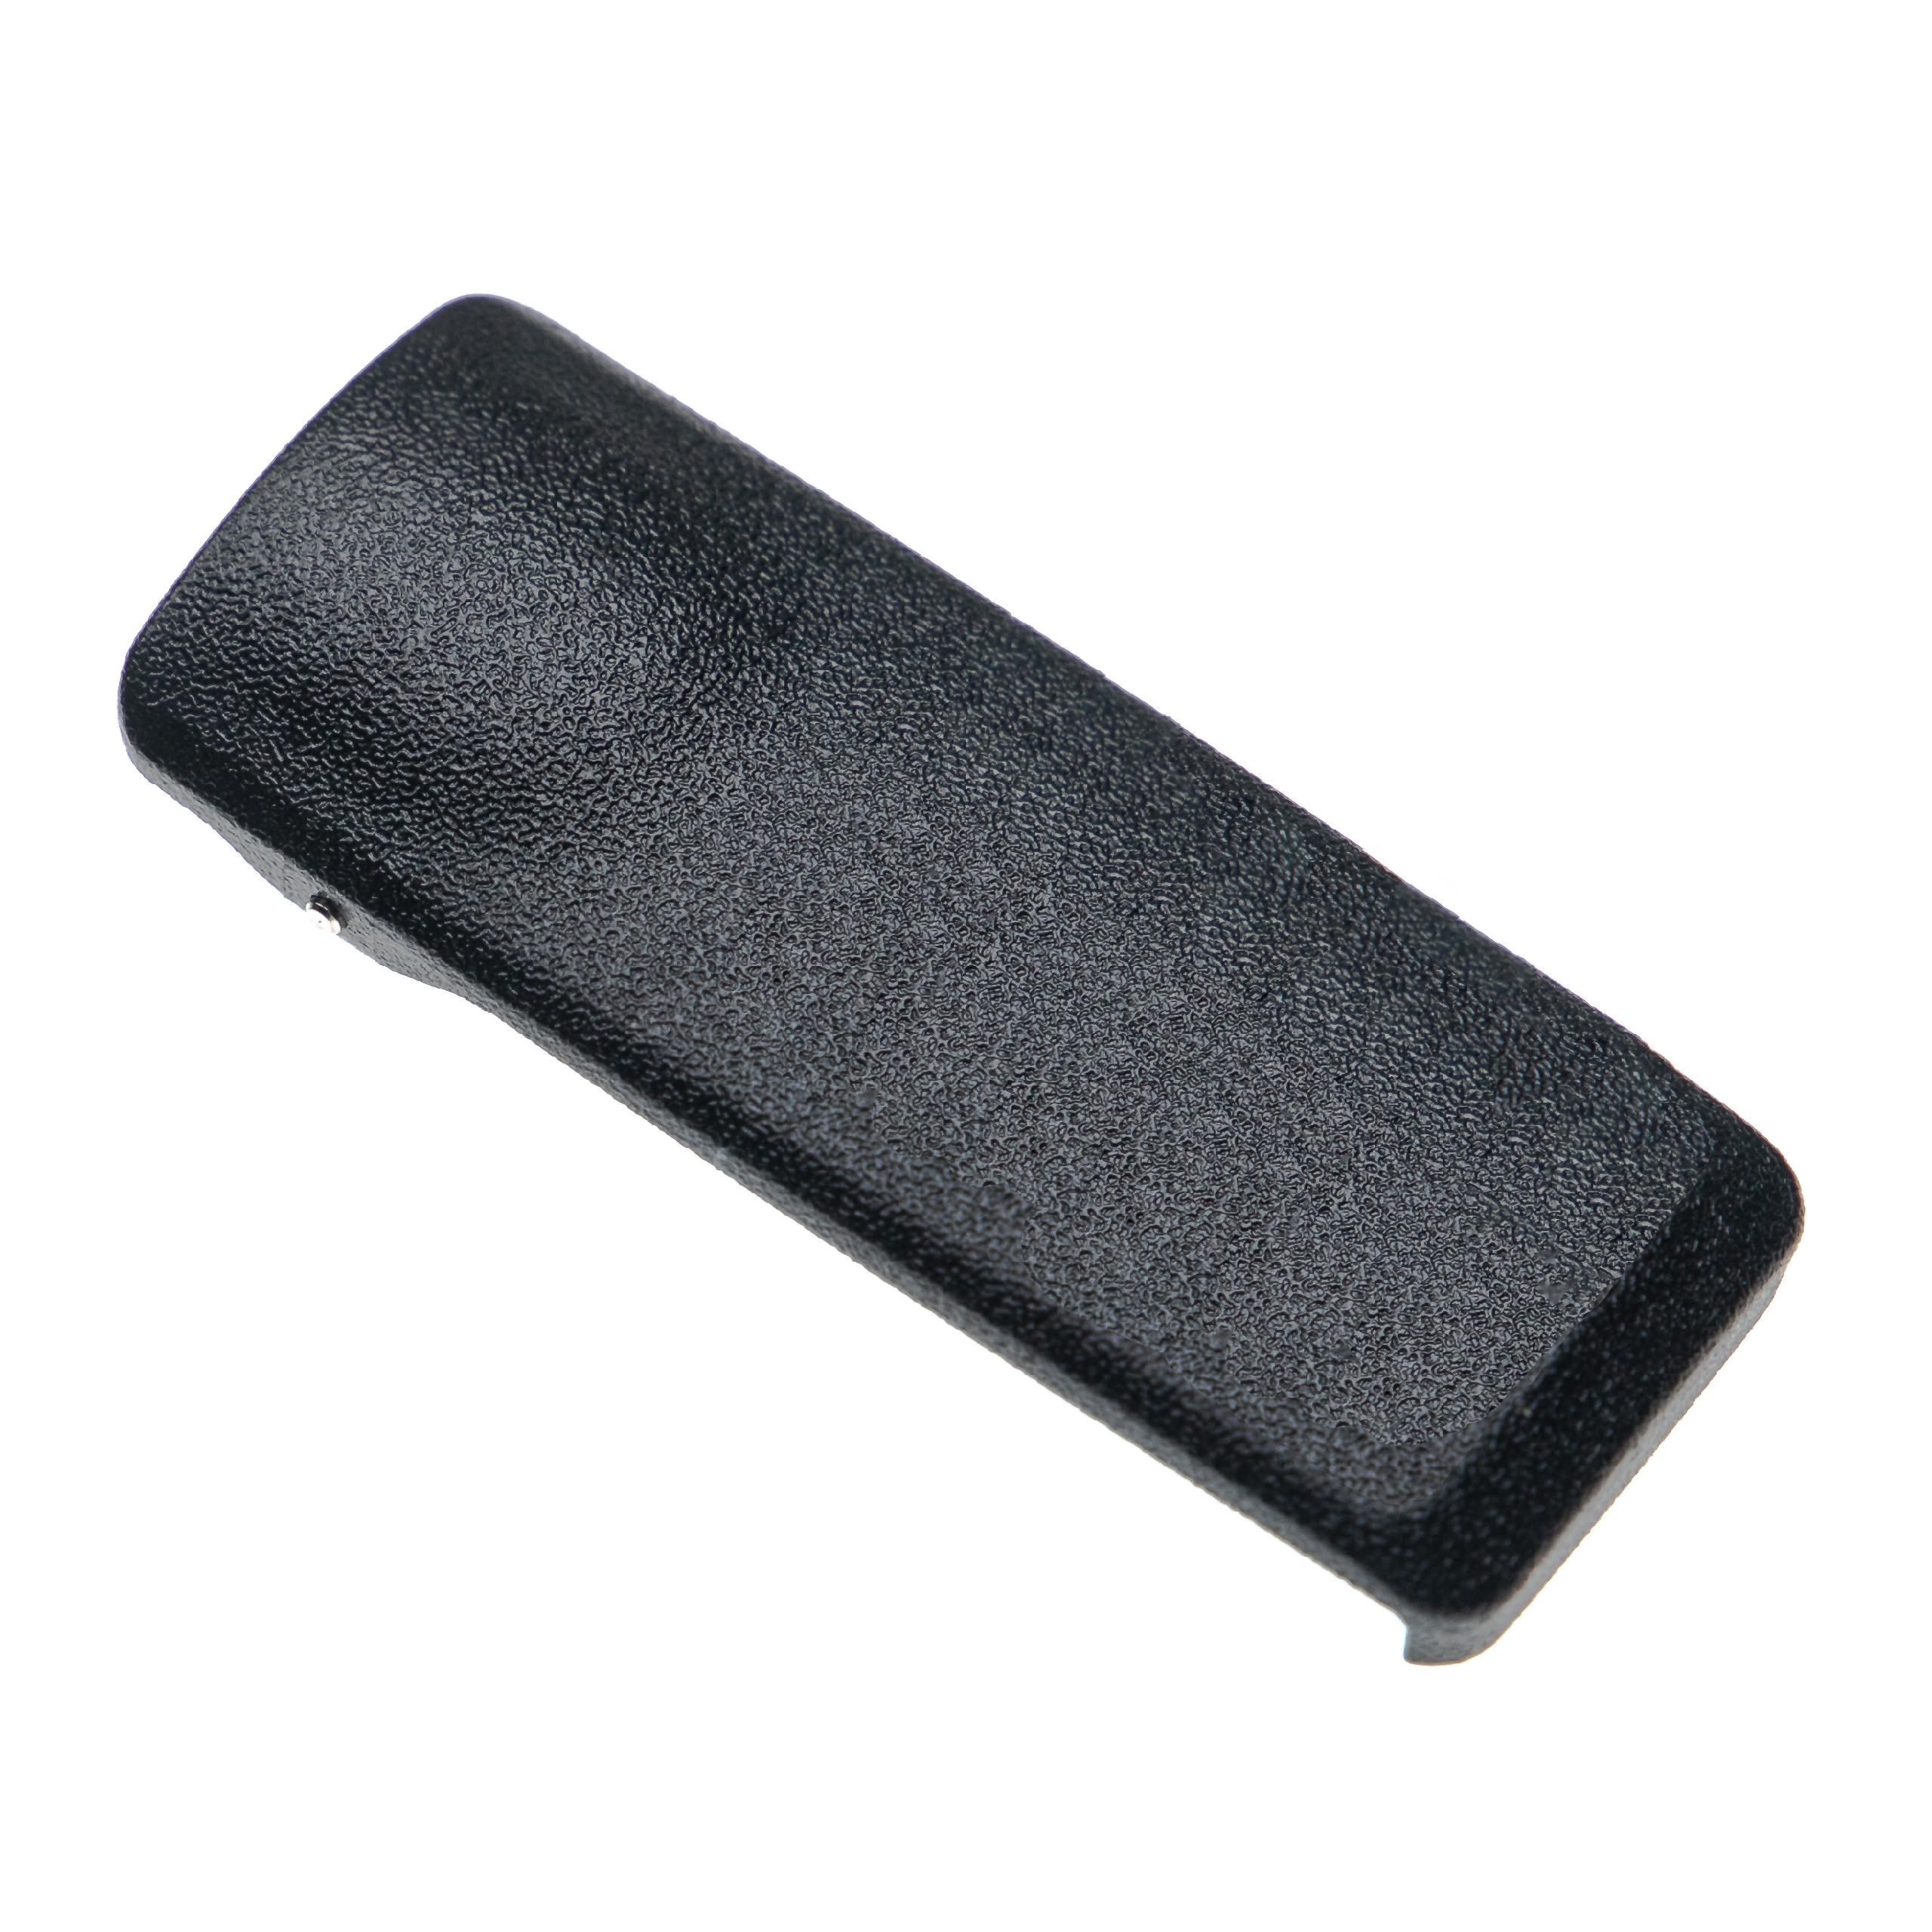 Clip ceinture remplace Motorola PMLN4651A pour radio Motorola – plastique, noir